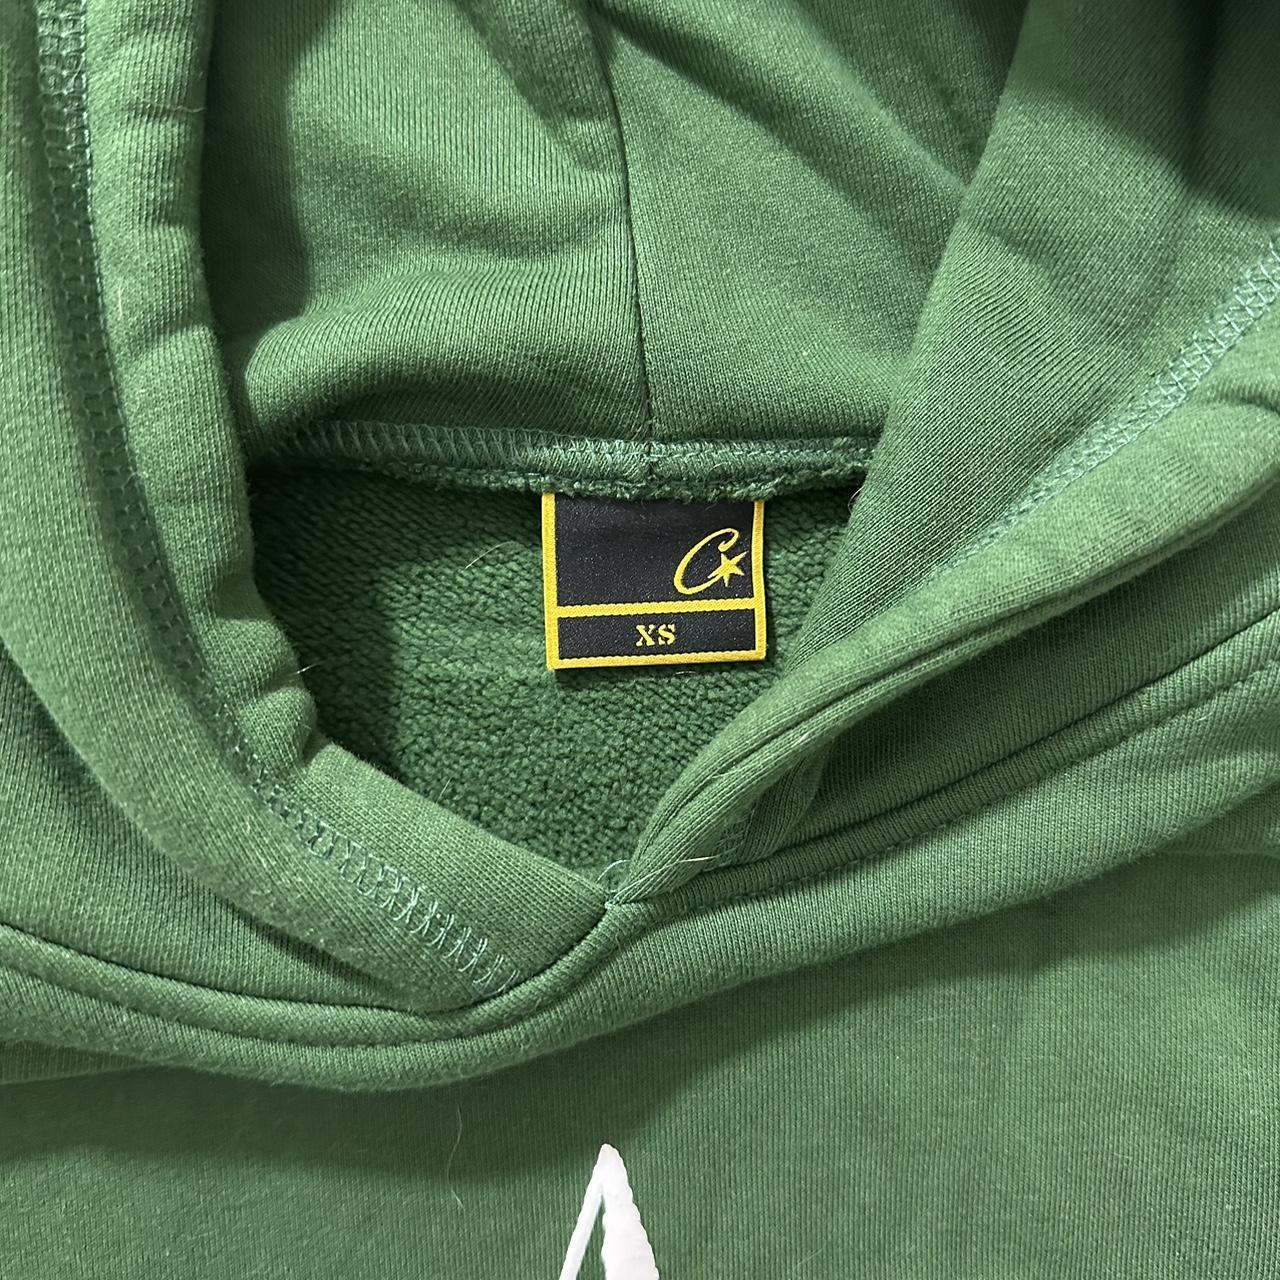 green corteiz five star hoodie size XS worn... - Depop